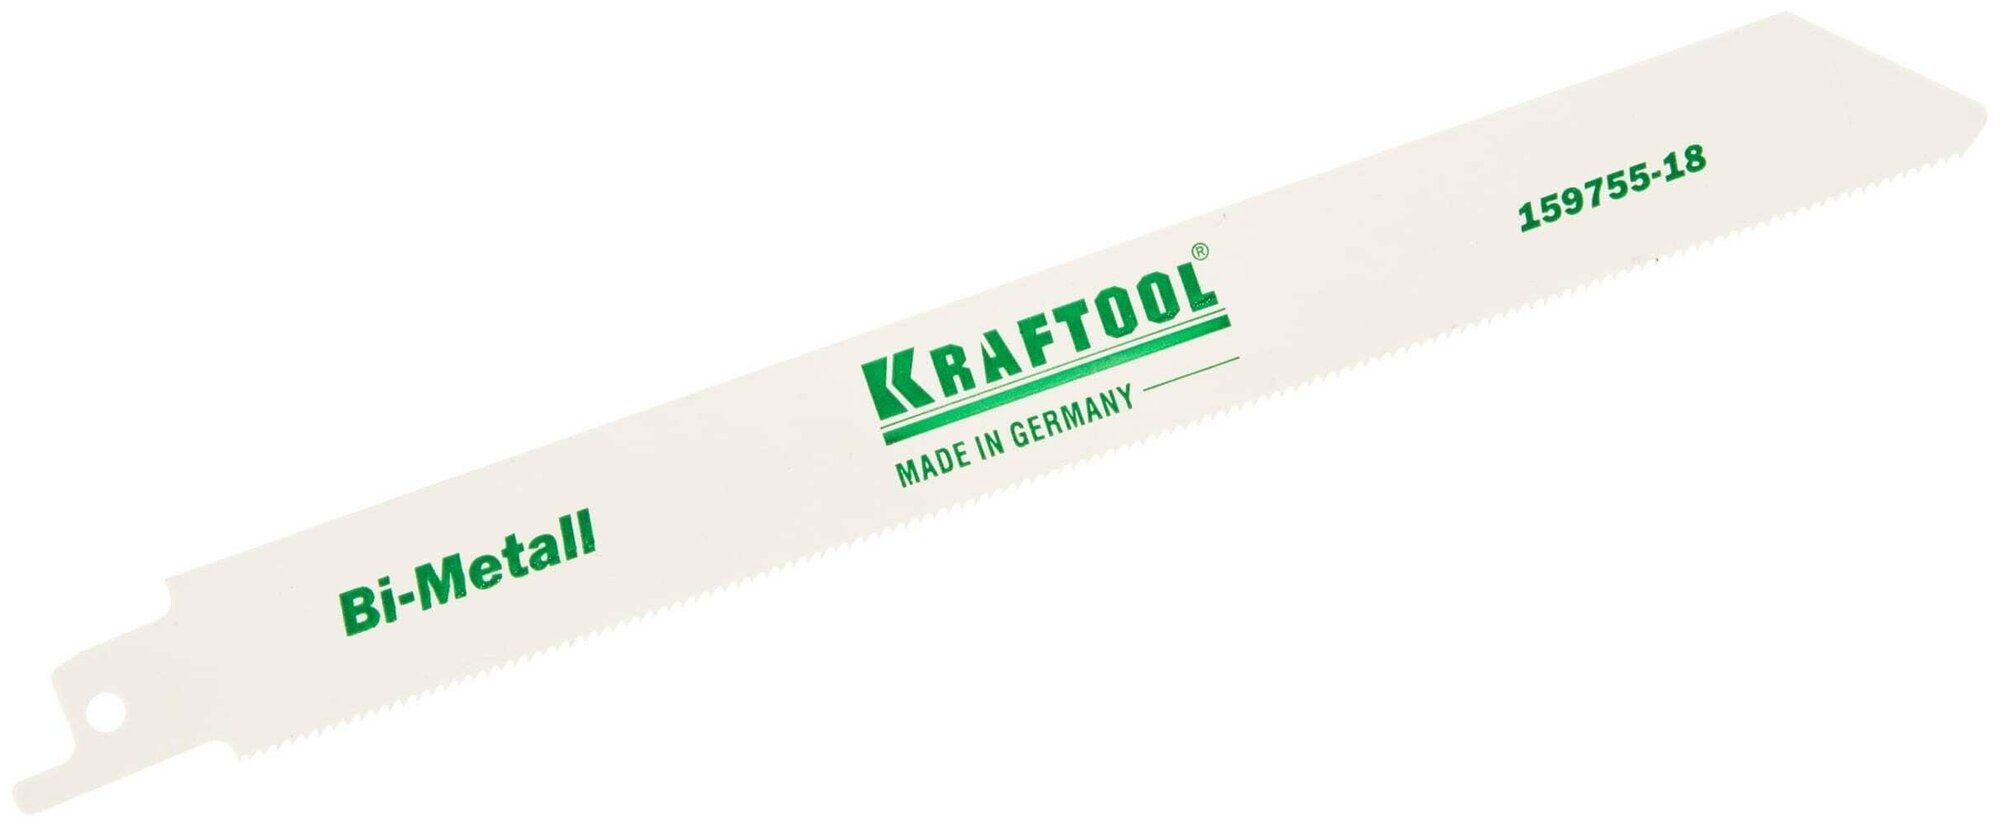 Полотно Kraftool 159755-18 по металлу для электроножовки S1122EF 1/2" S разведенные фрезерованные зубья Bi-Metall шаг 1.4 мм 180 мм